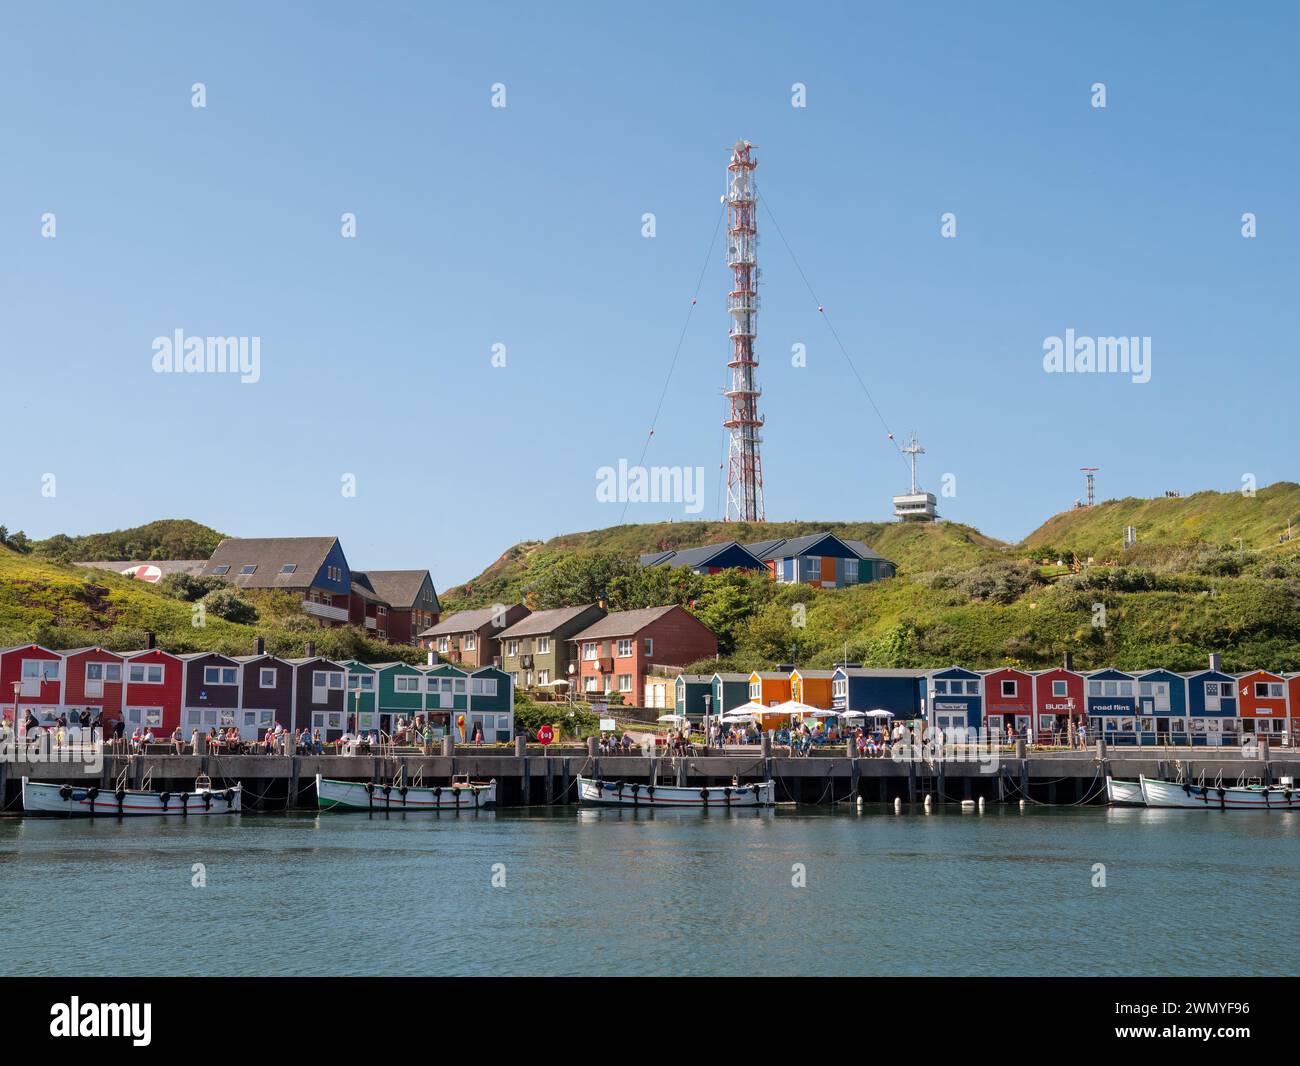 Passeggiata con aragoste di legno al porto di Helgoland, isola nella Baia tedesca, Mare del Nord, Germania Foto Stock